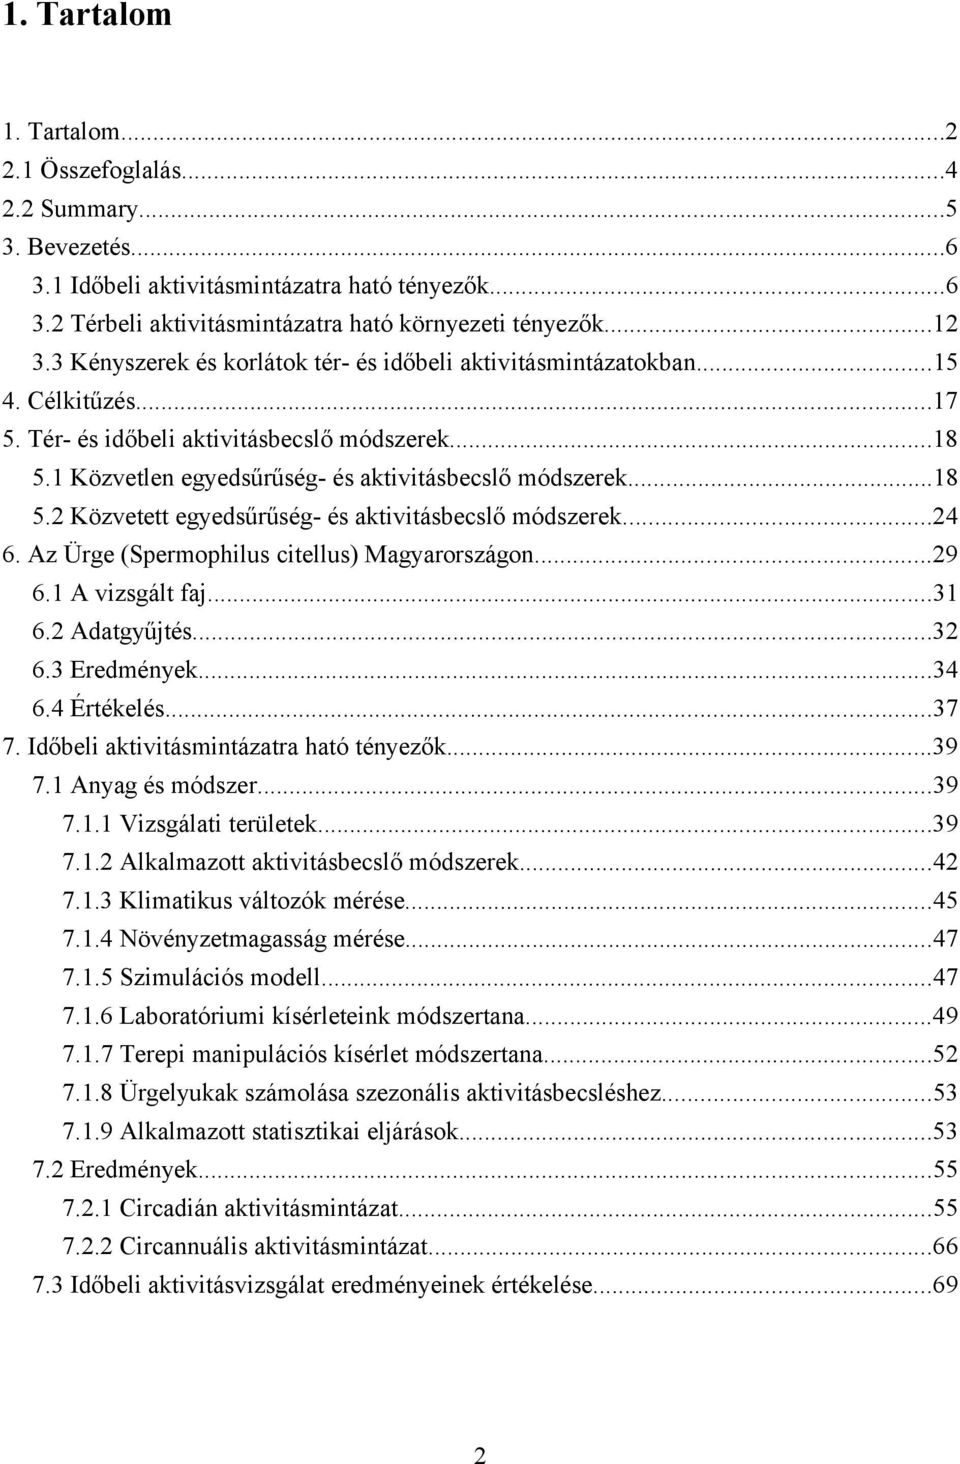 ..24 6. Az Ürge (Spermophilus citellus) Magyarországon...29 6.1 A vizsgált faj...31 6.2 Adatgyűjtés...32 6.3 Eredmények...34 6.4 Értékelés...37 7. Időbeli aktivitásmintázatra ható tényezők...39 7.